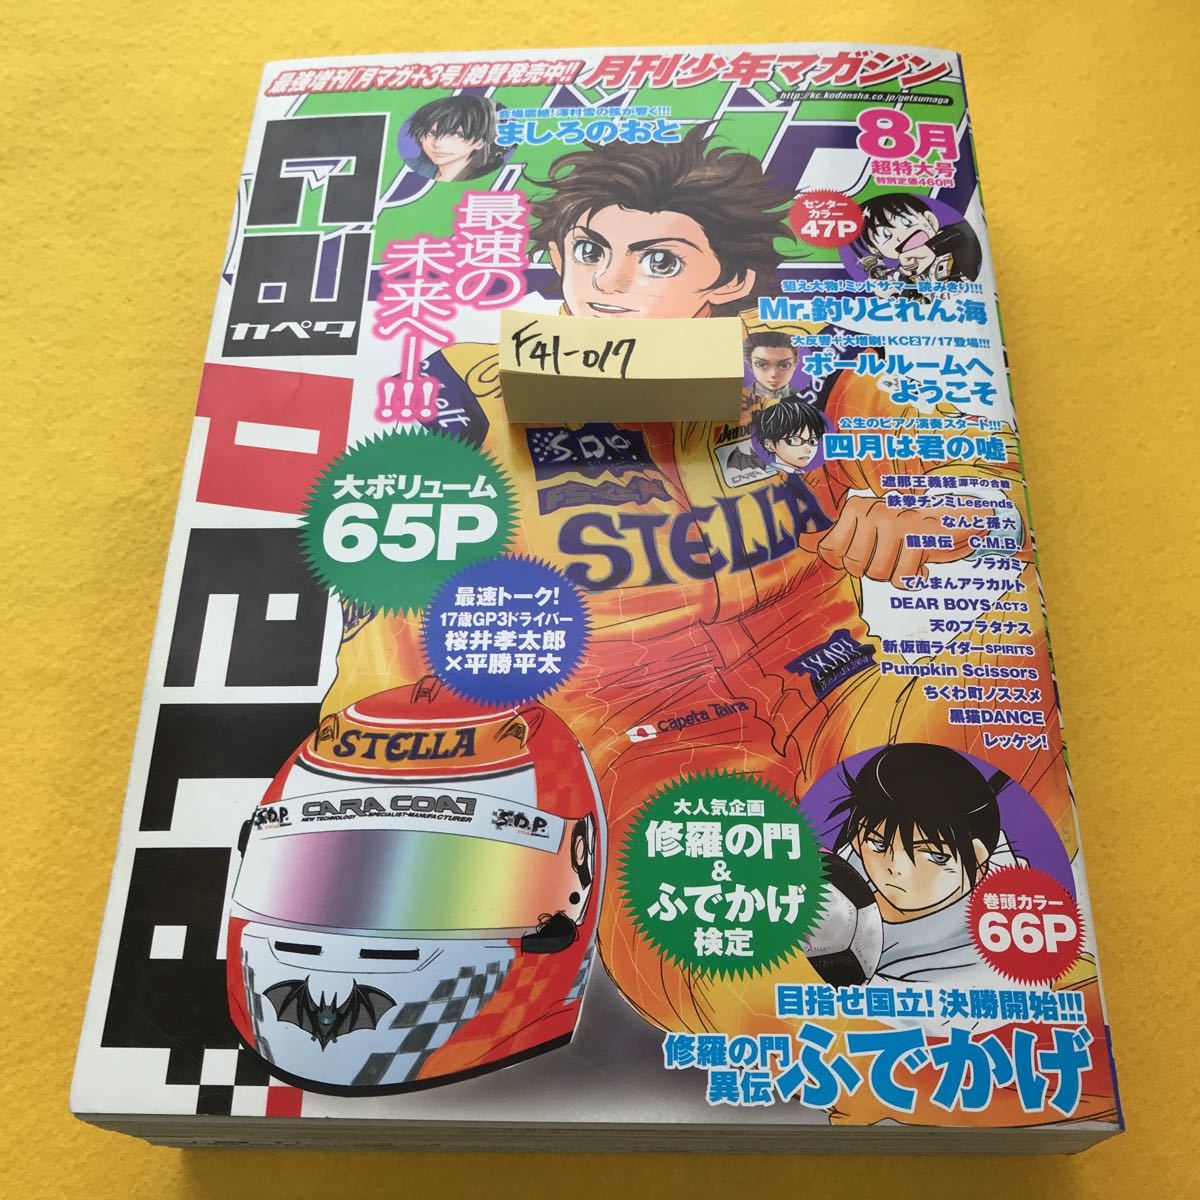 F41-017 月刊少年マガジン 平成24年8月超特大号 マカオGP予選レース